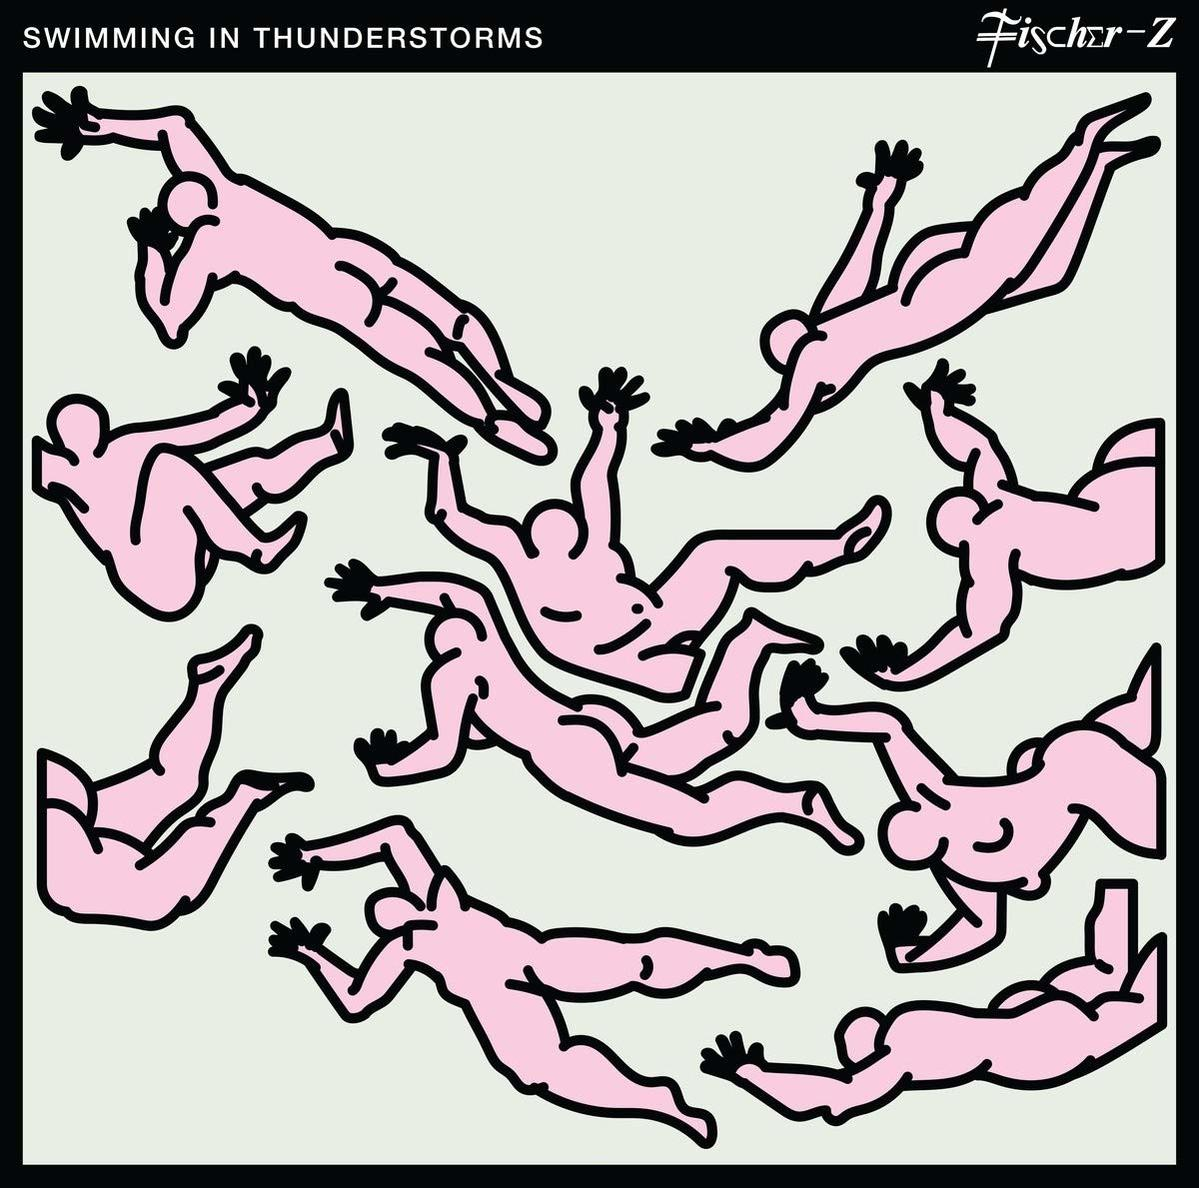 (Vinyl) Thunderstorms Z - Fischer - Swimming In